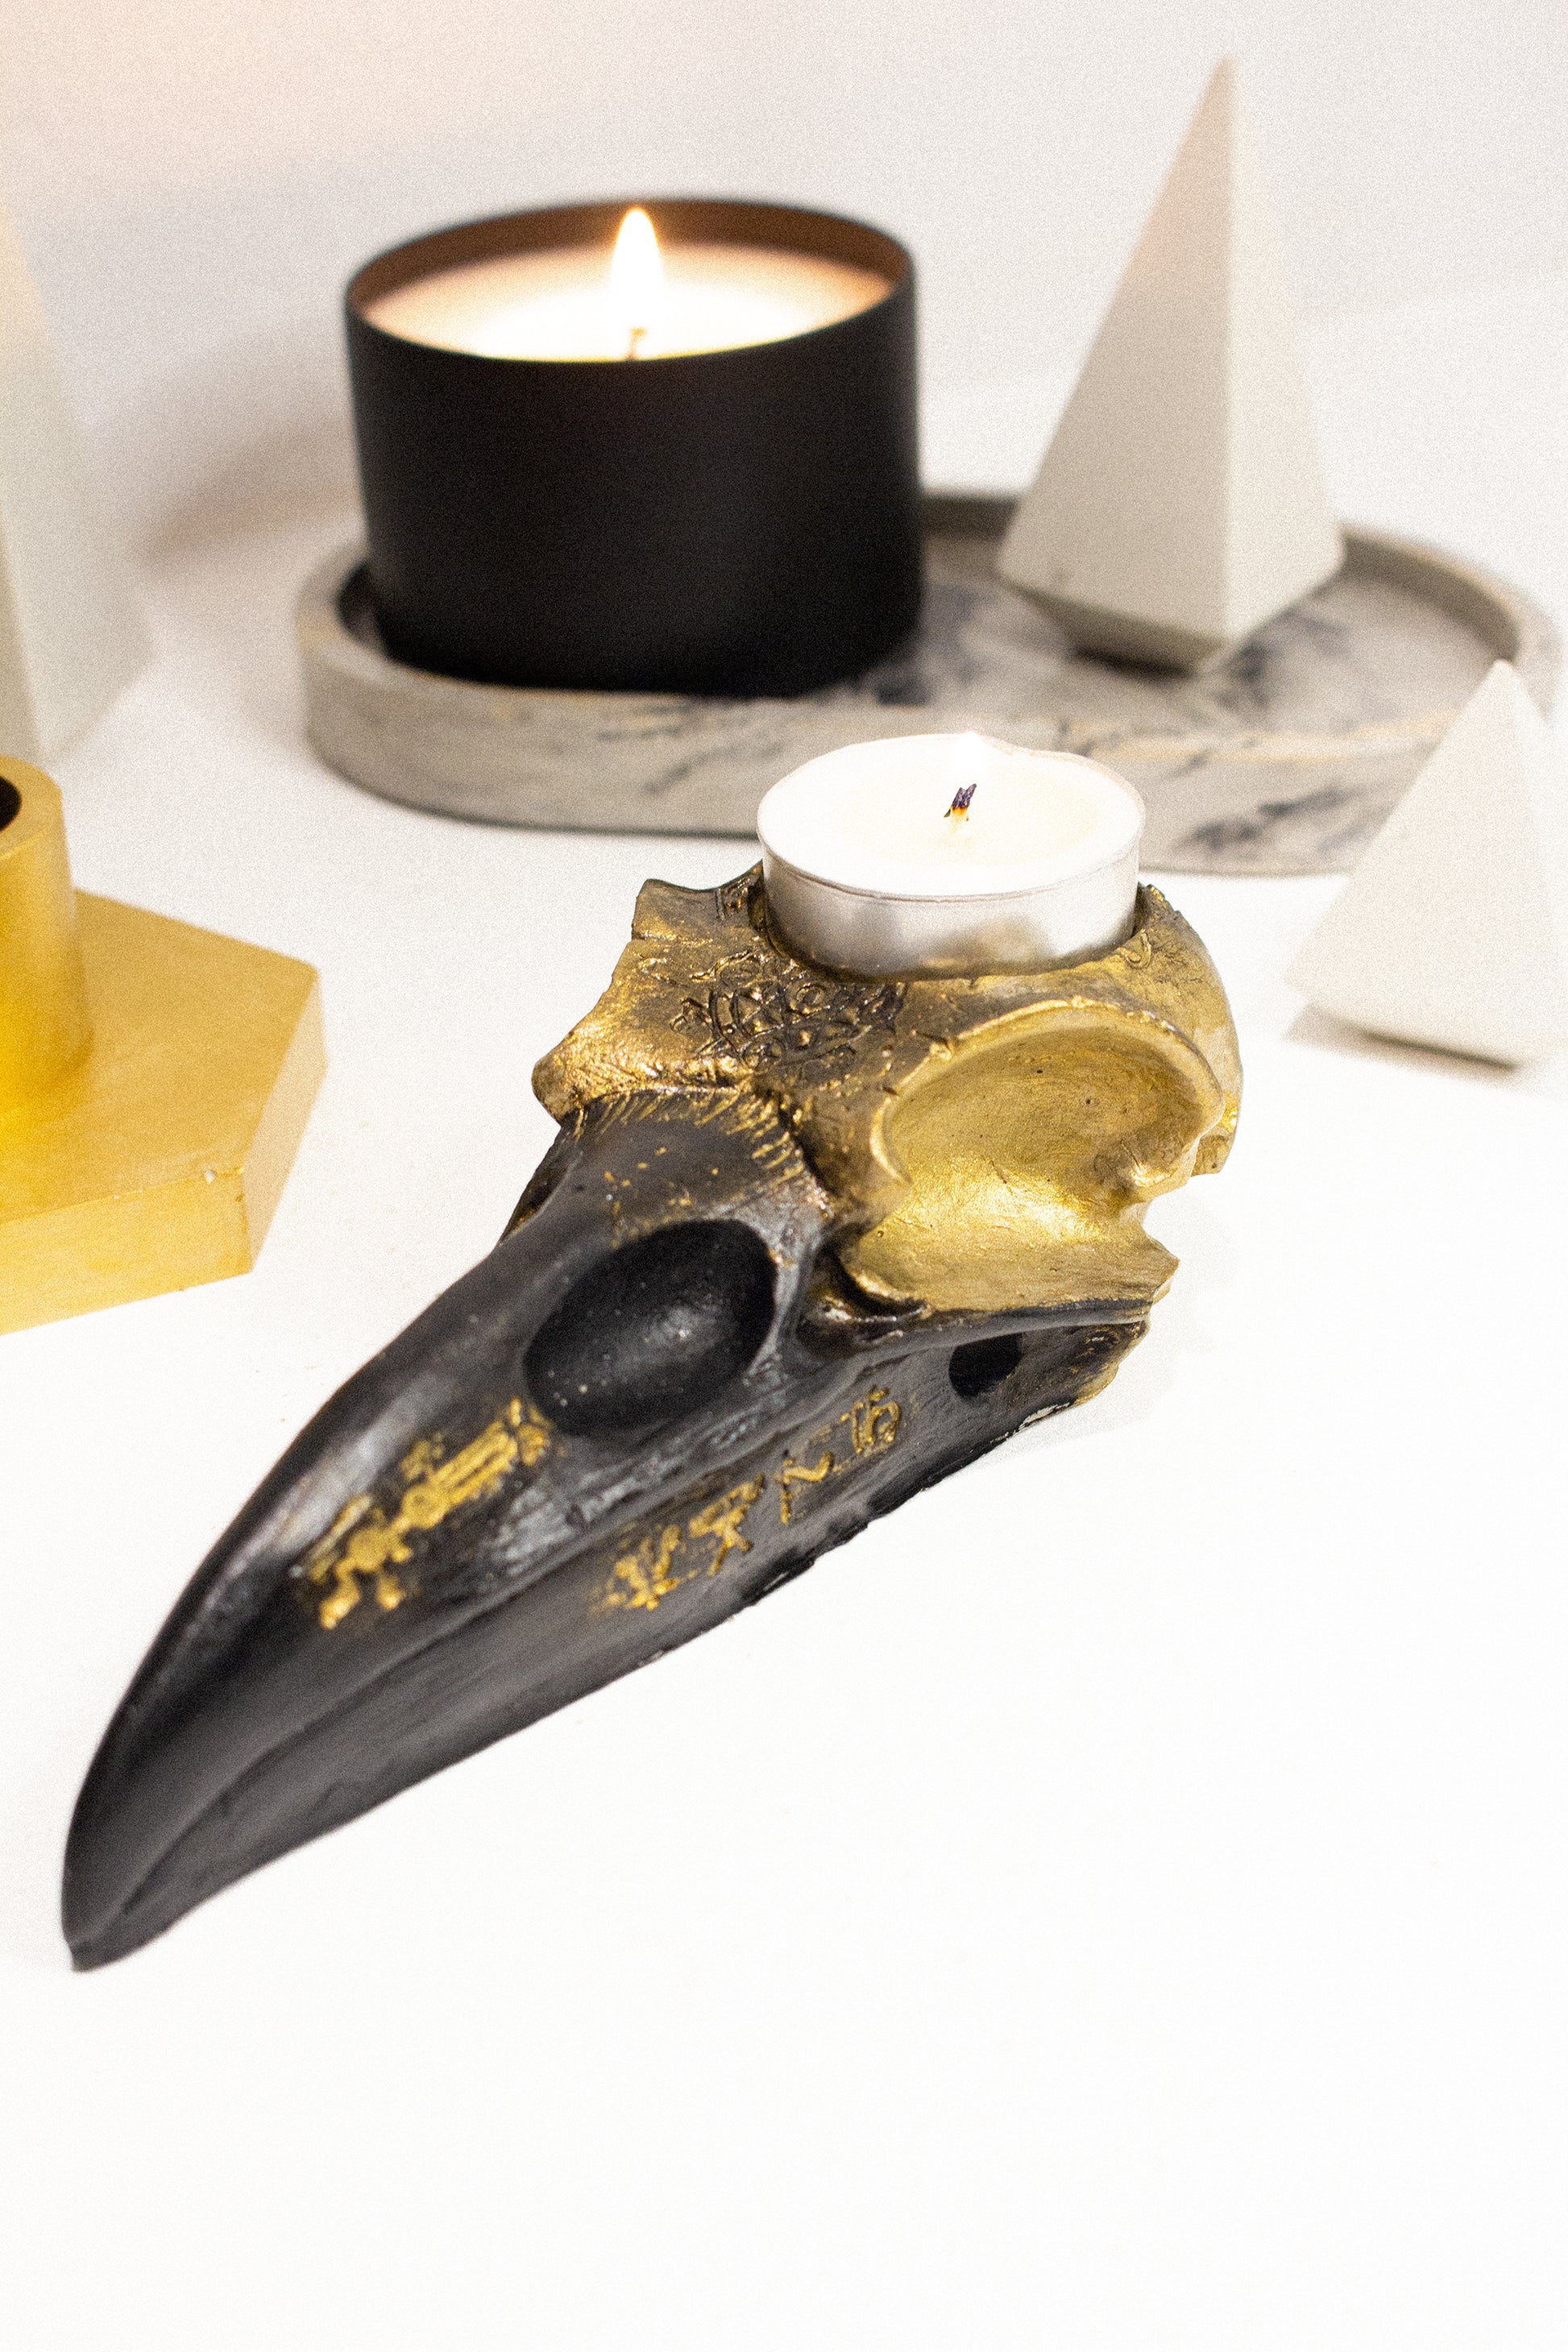 Skull Candle Holder Gothic Decor Skull Tealight Candle Holder Tea light  Candle